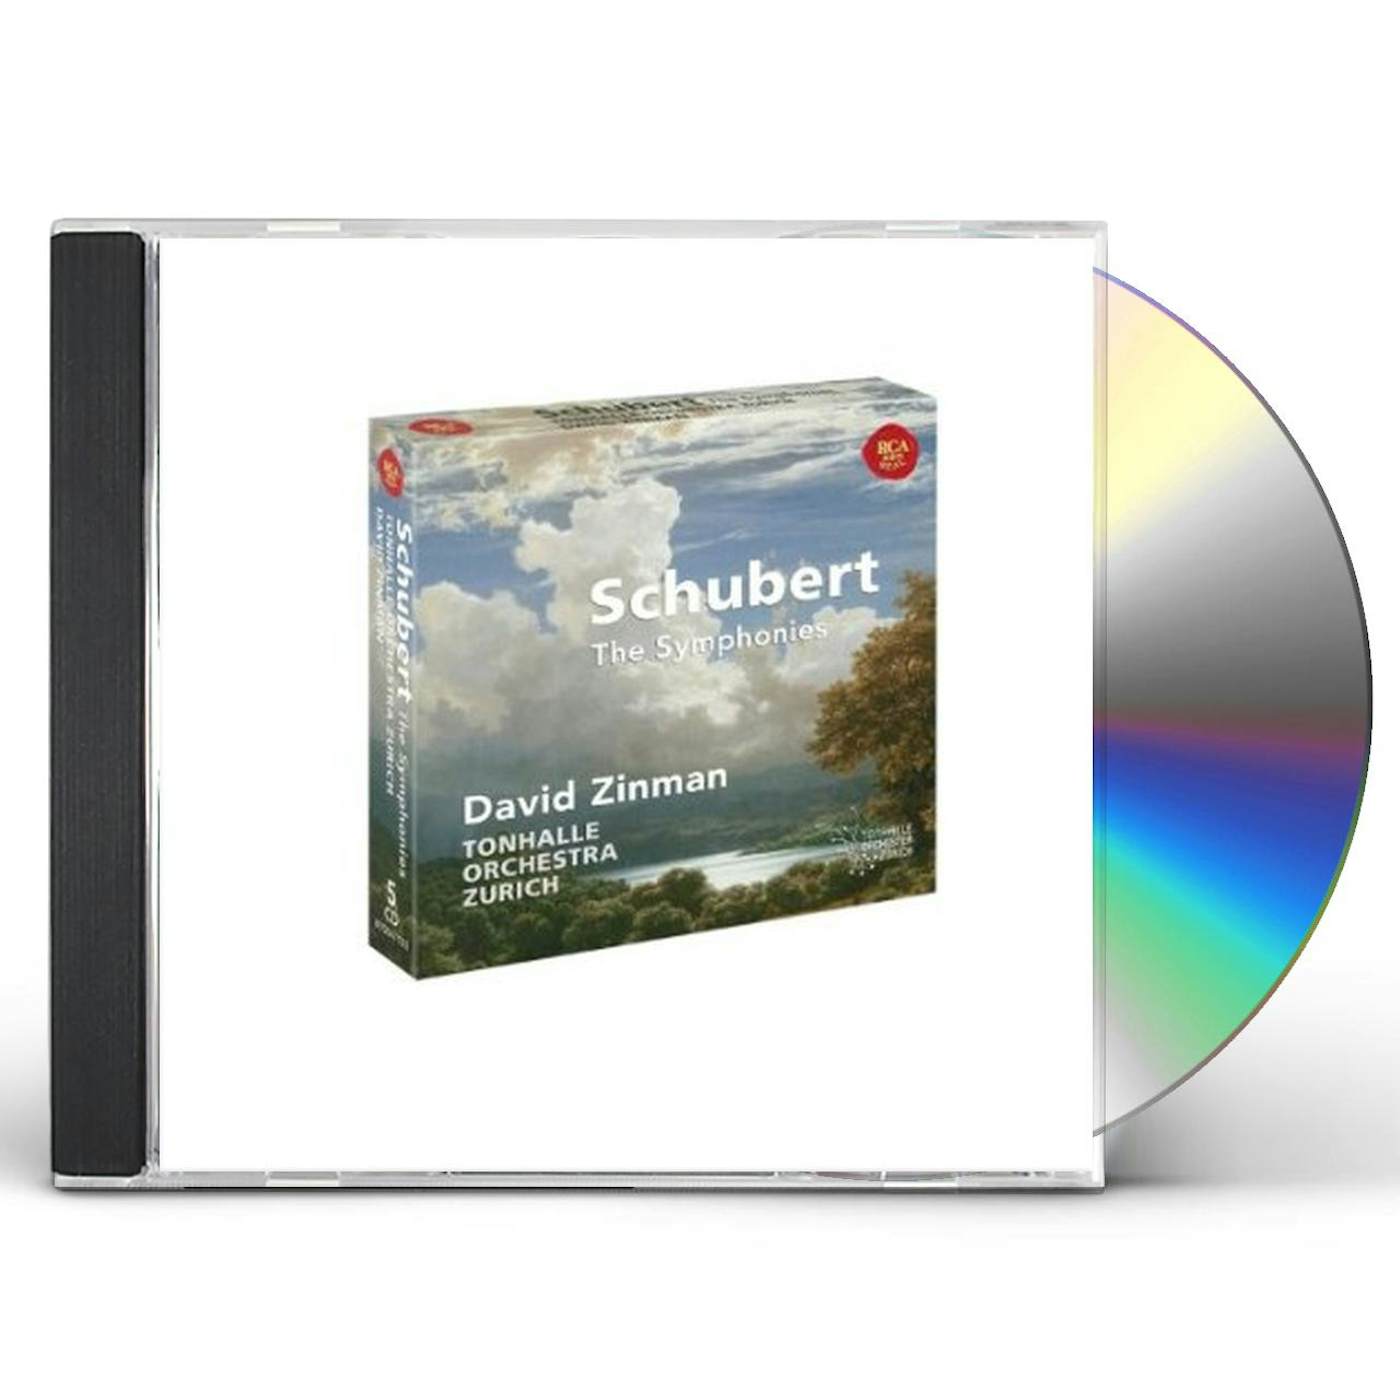 David Zinman SCHUBERT: THE SYMPHONIES CD